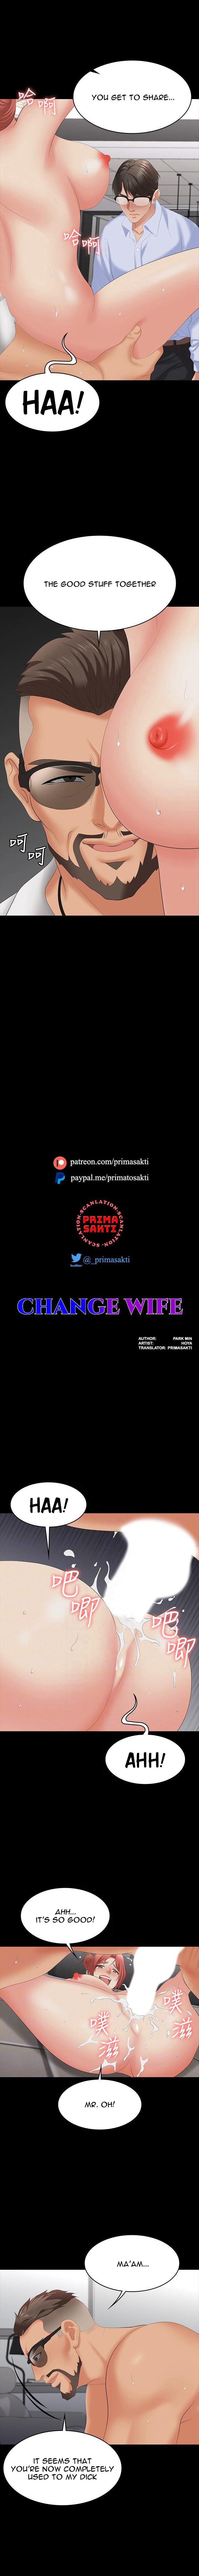 Change Wife image